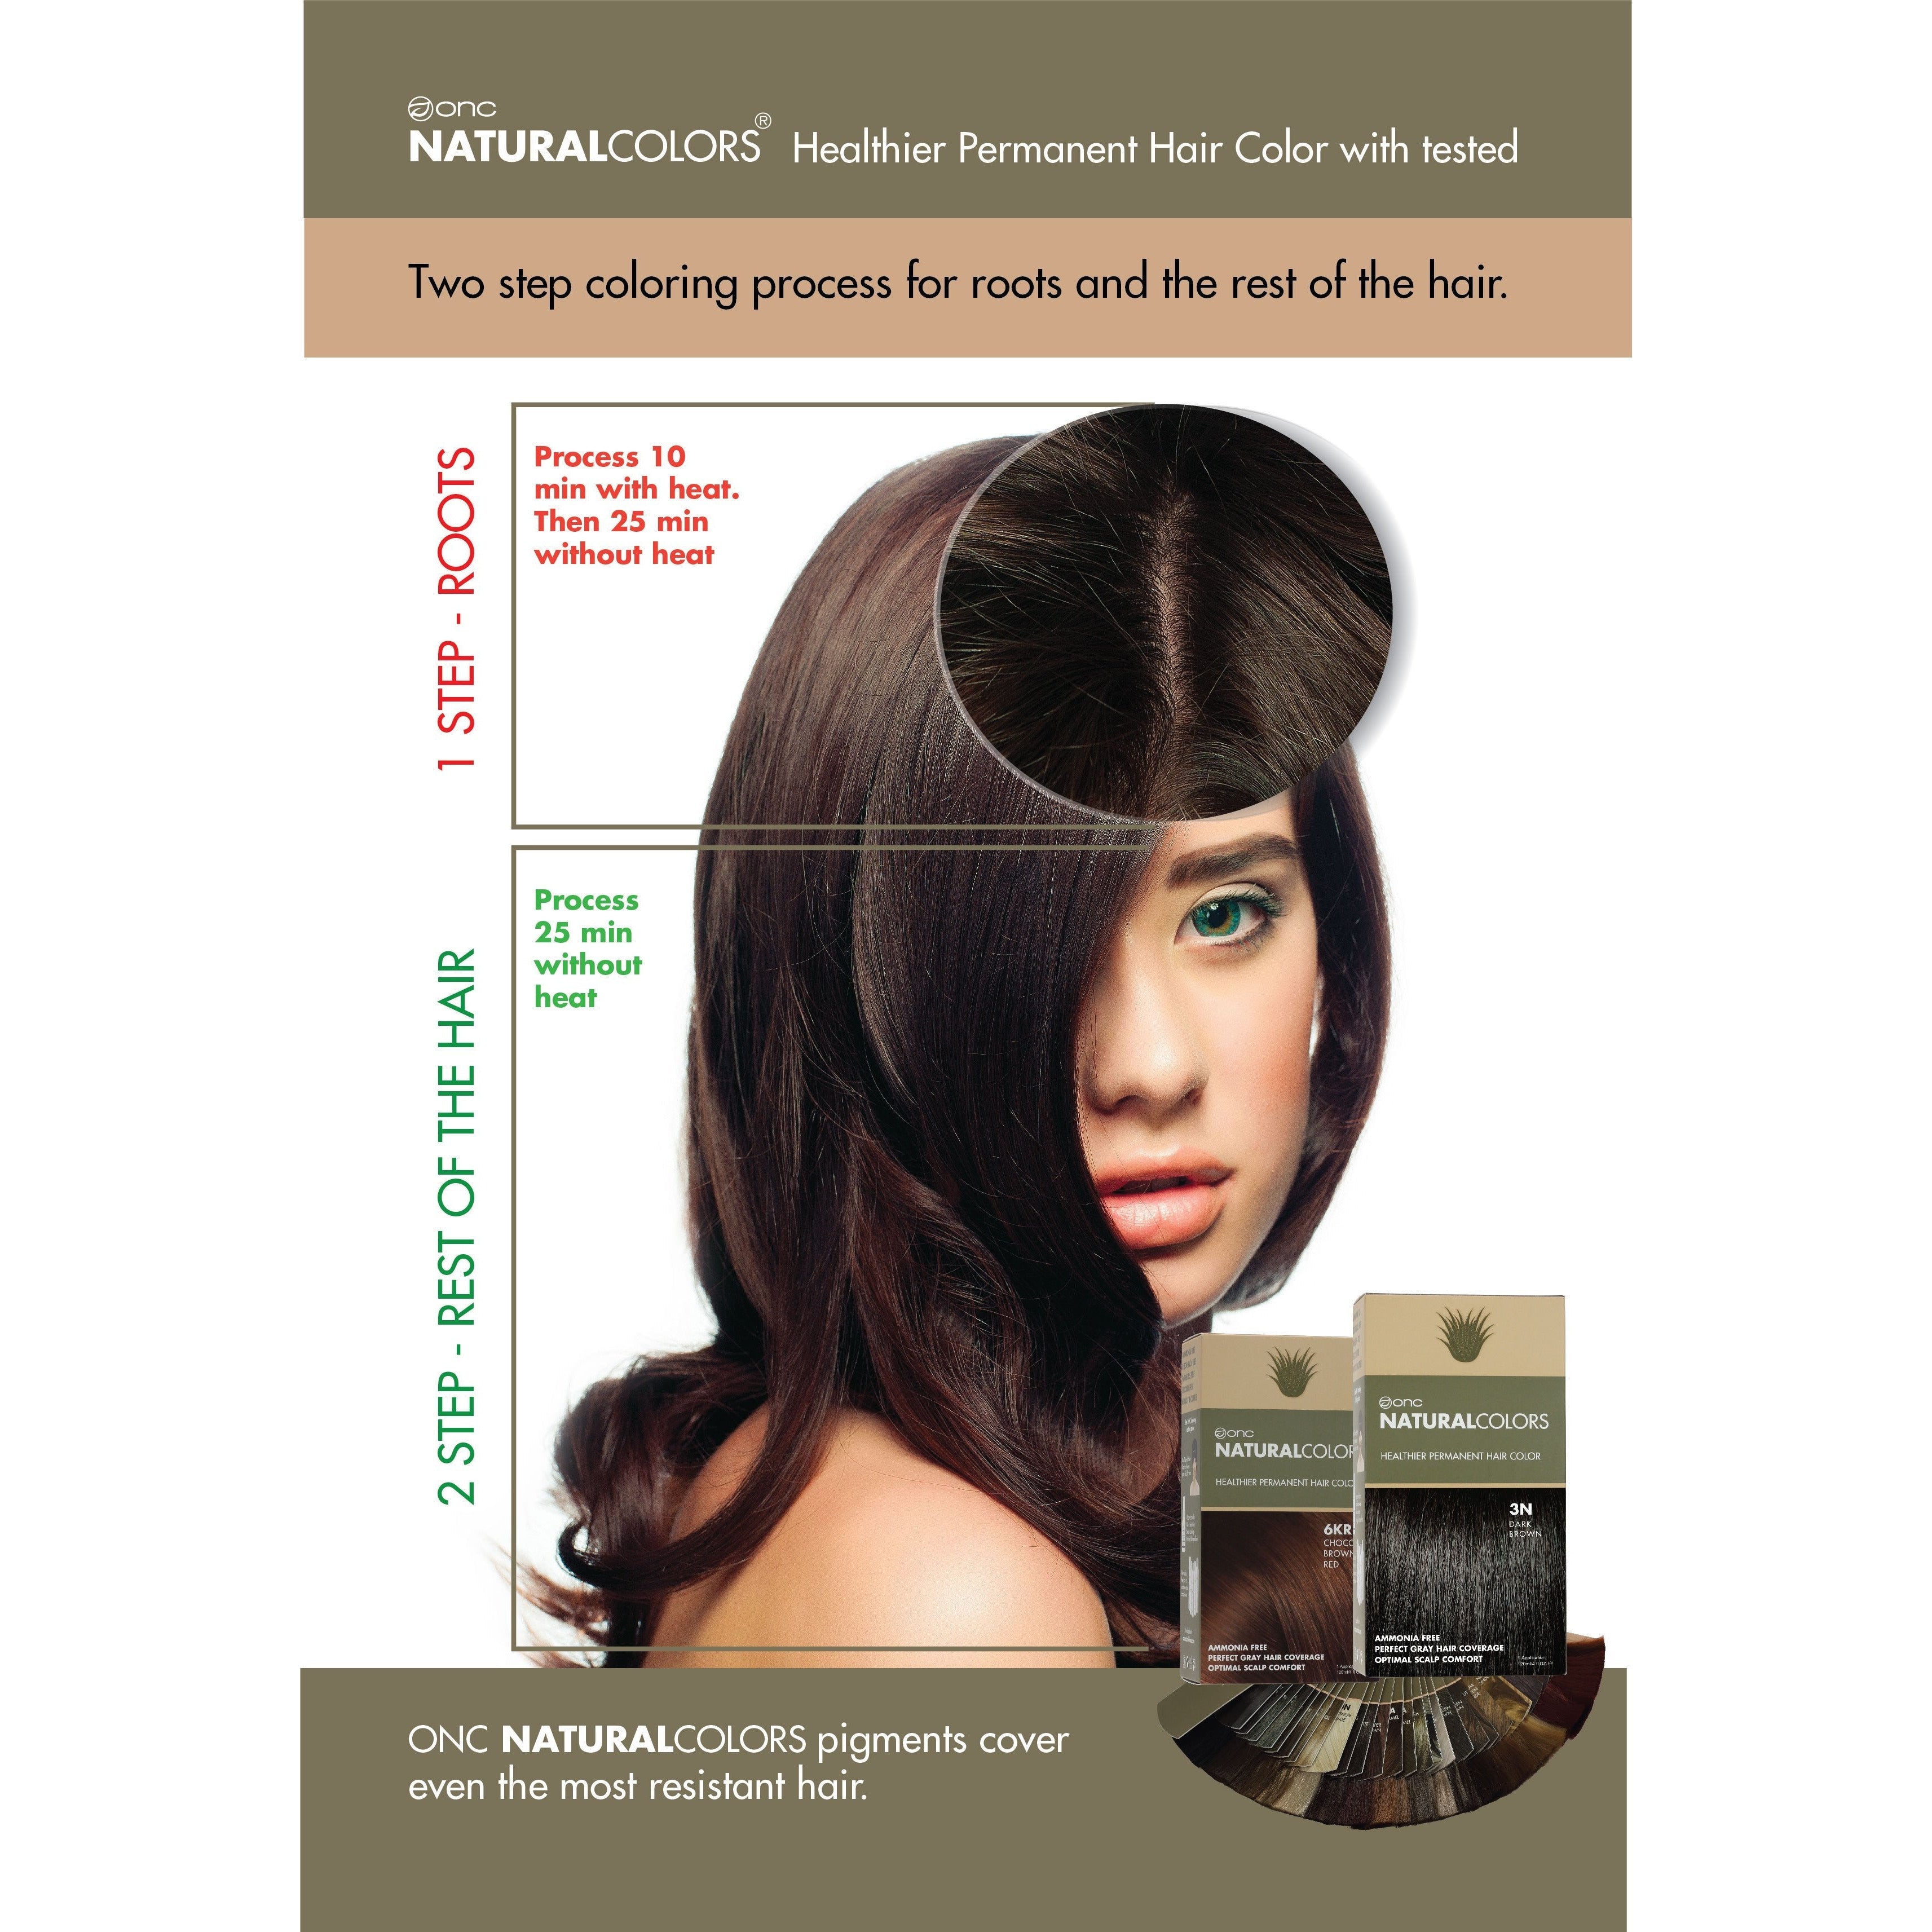 6C Dark Ash Blonde Heat Activated Hair Dye With Organic Ingredients - 120 ml (4 fl. oz)